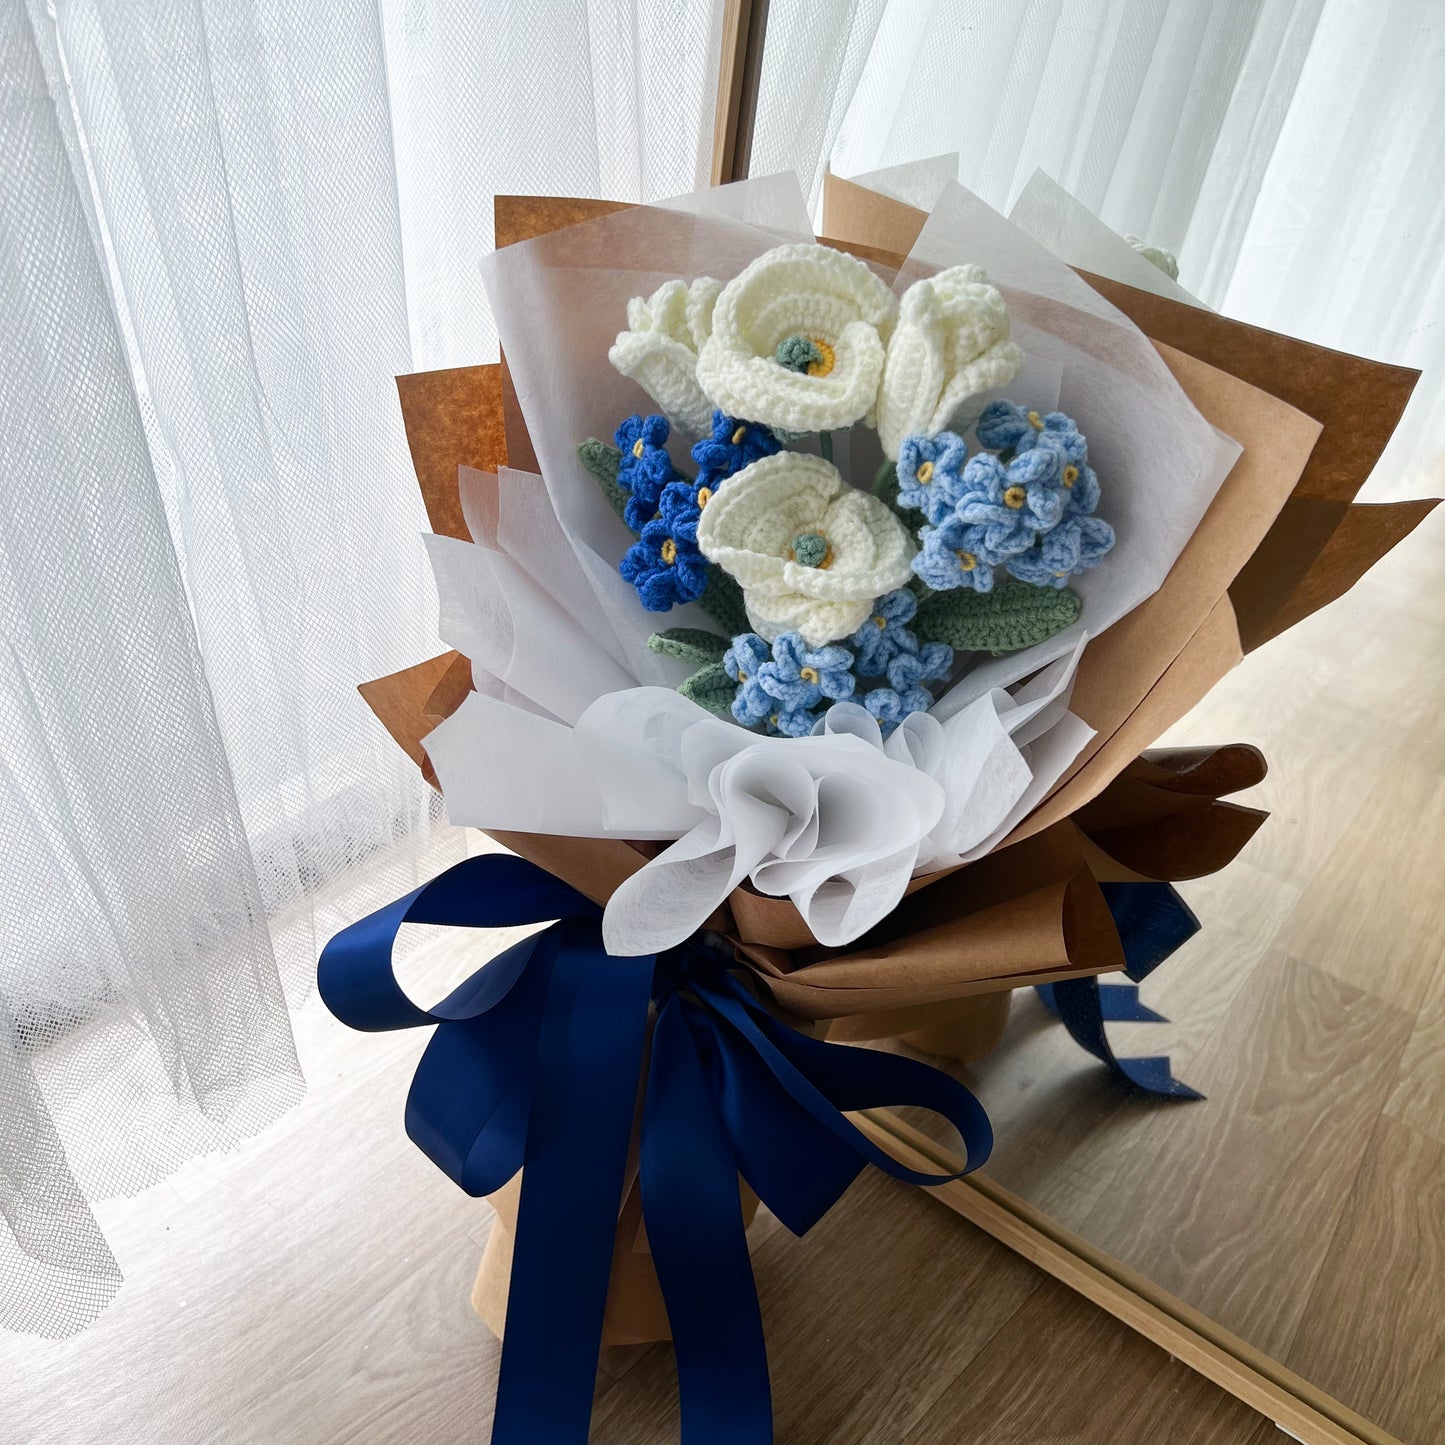 Bleu: Crochet tulips & forget-me-nots & calla lilies